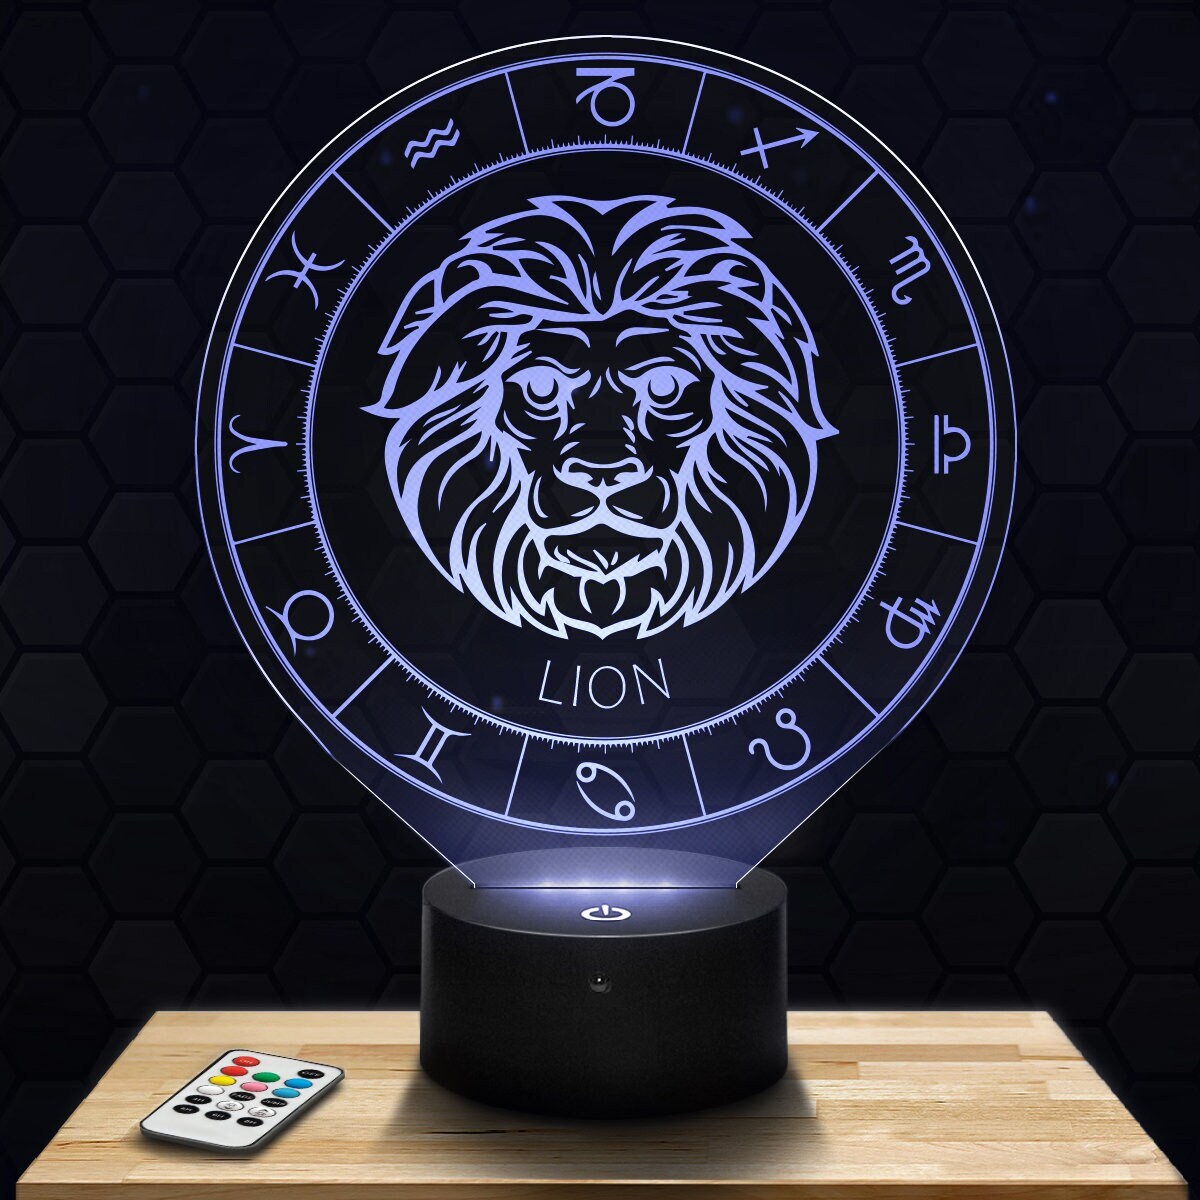 Lampe Led 3D- Signe Astrologique Lion - Express 24H Par Gravure Laser, Cadeau Fête Des Mères, Pères,